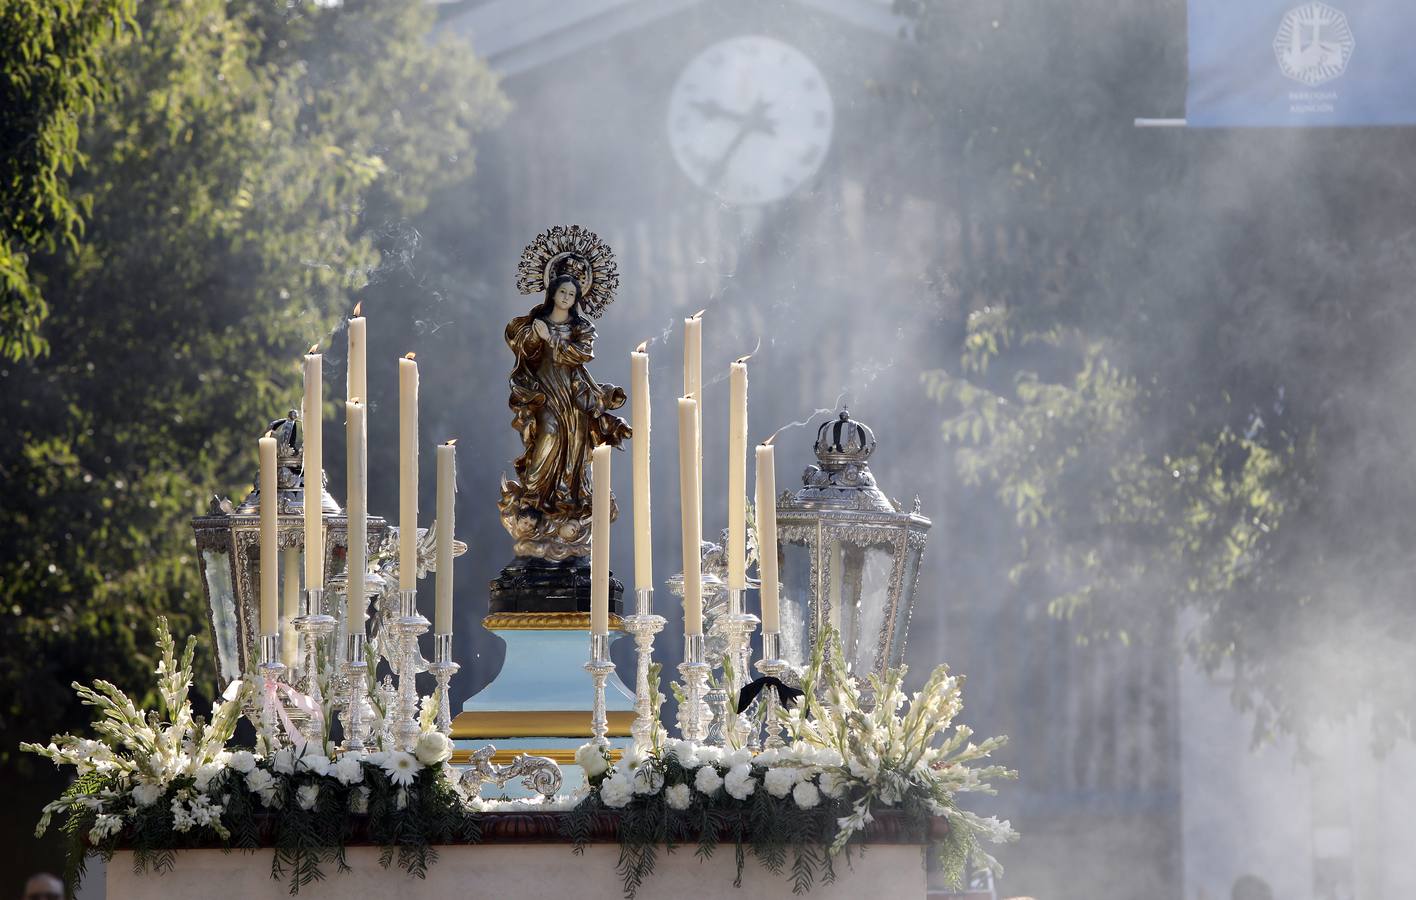 La procesión de la Virgen de la Asunción, en imágenes